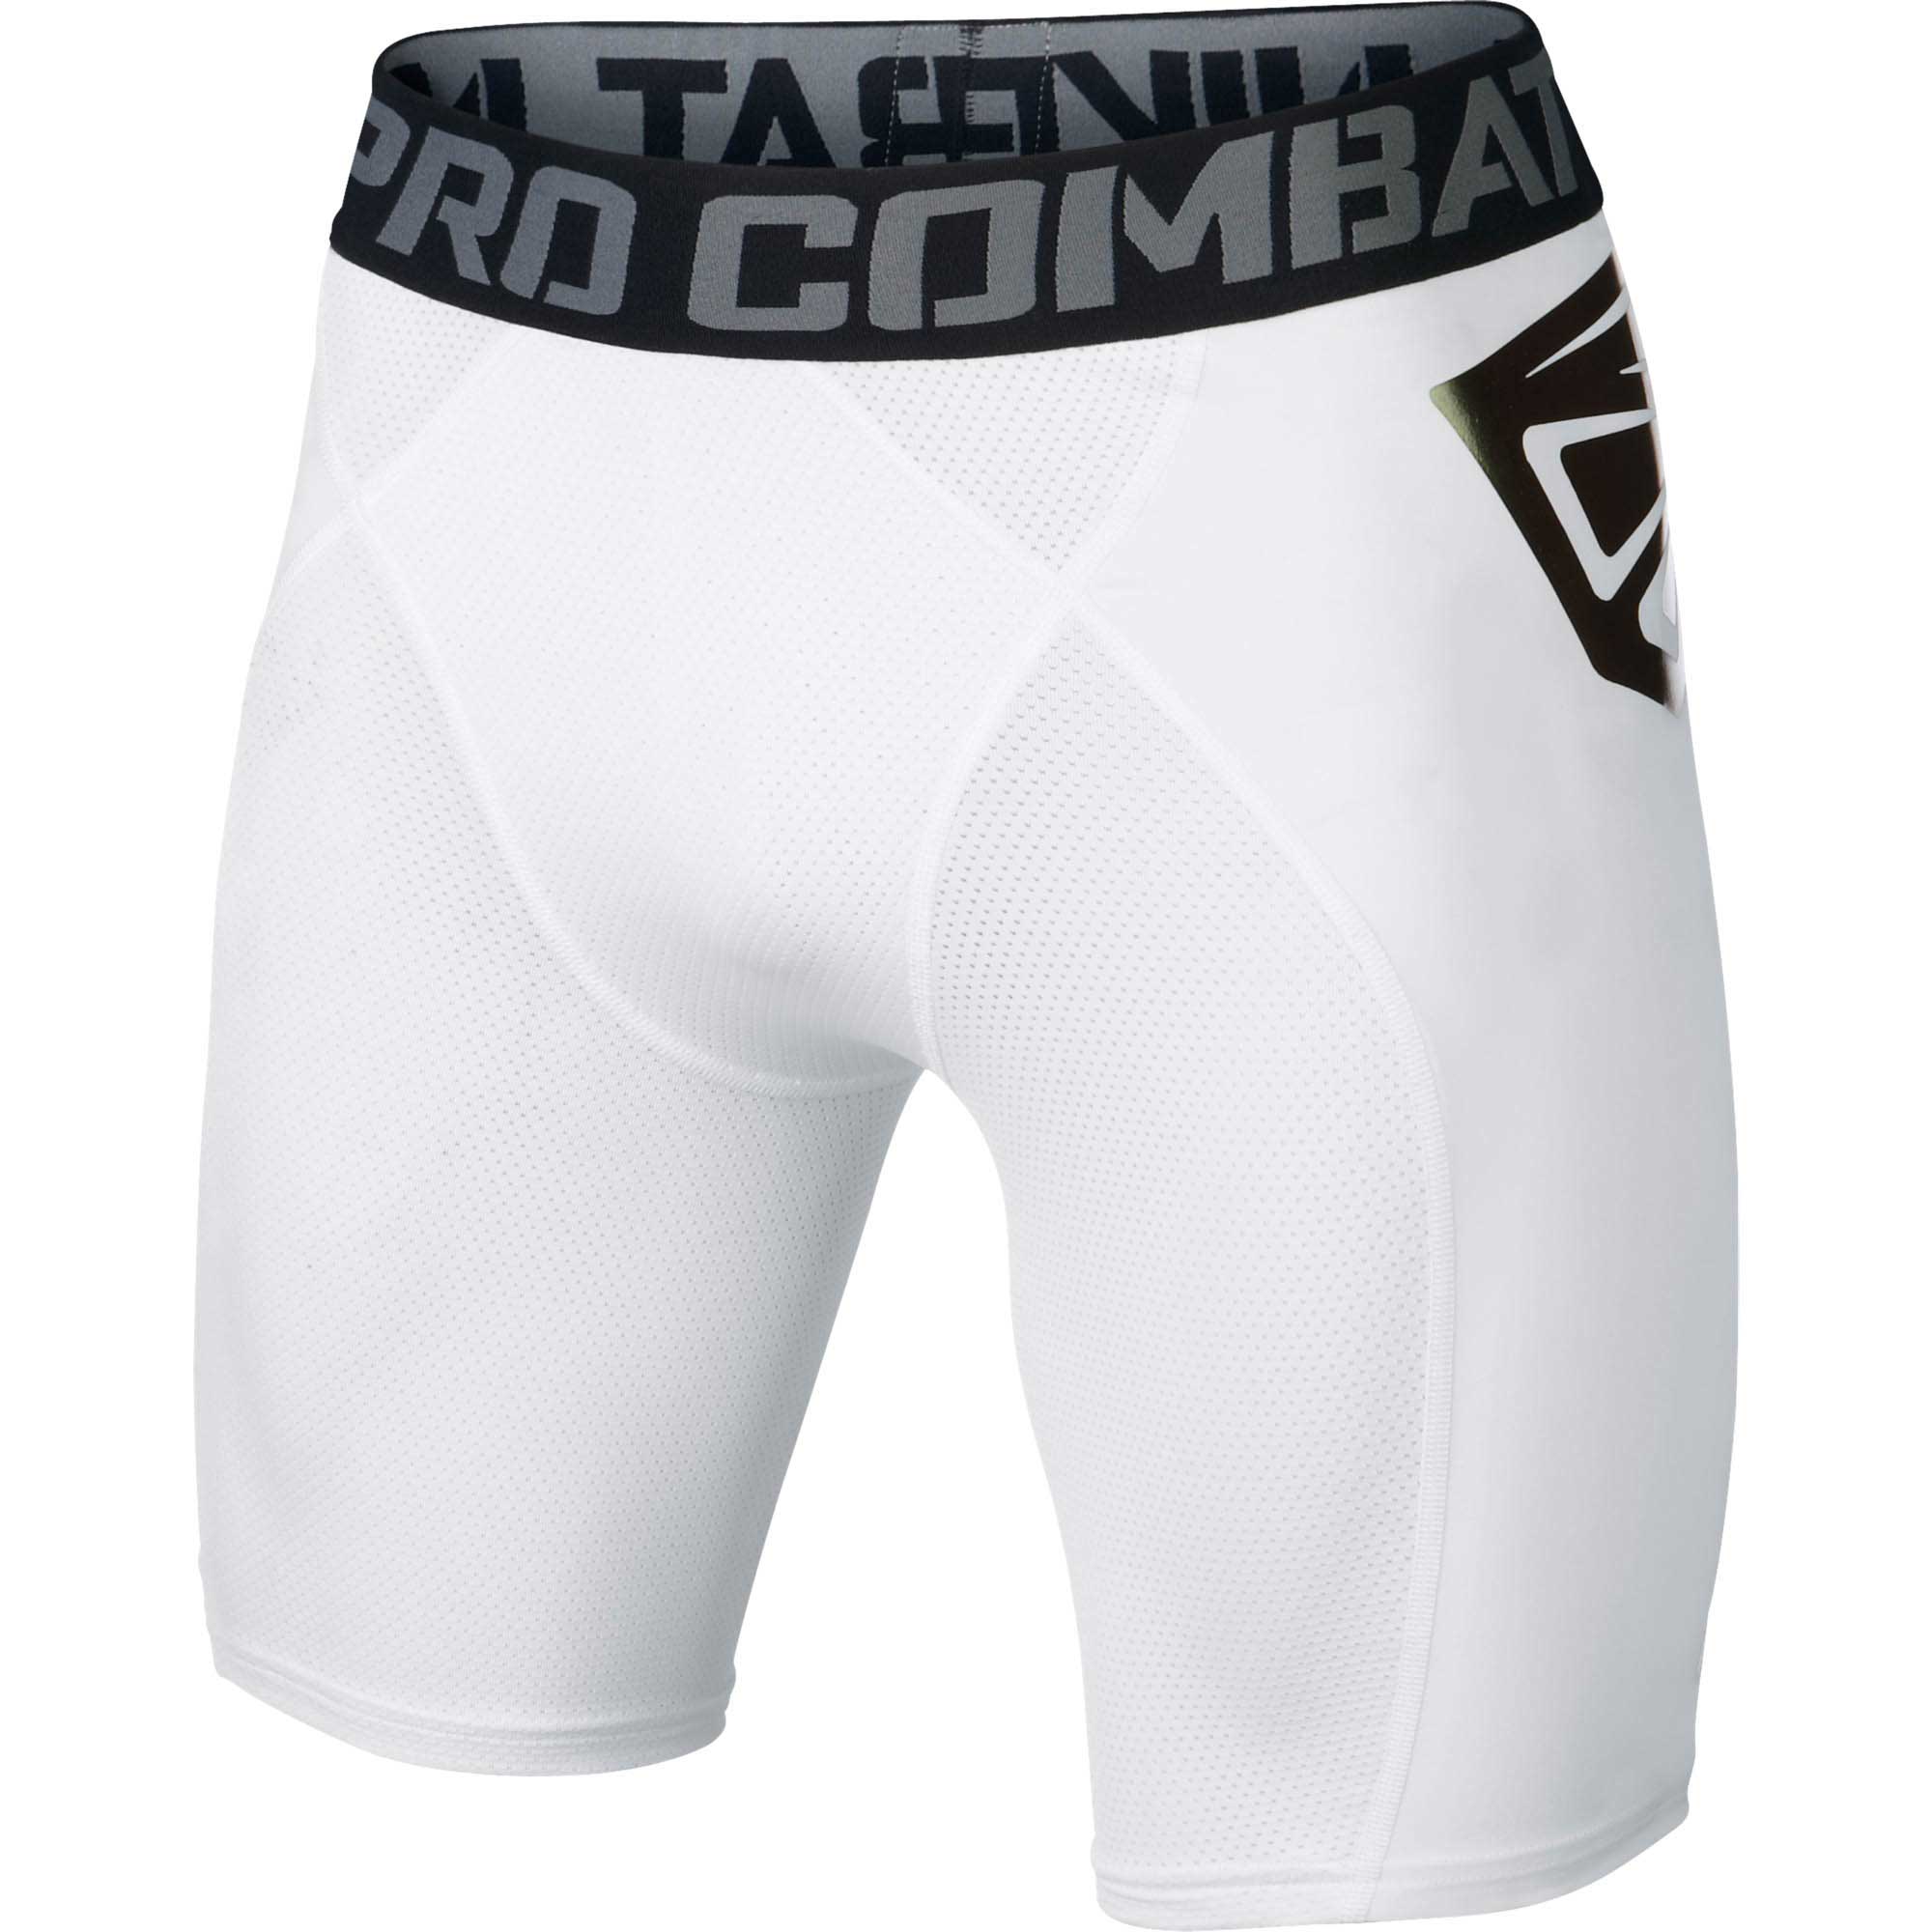 Buy > white nike soccer shorts > in stock